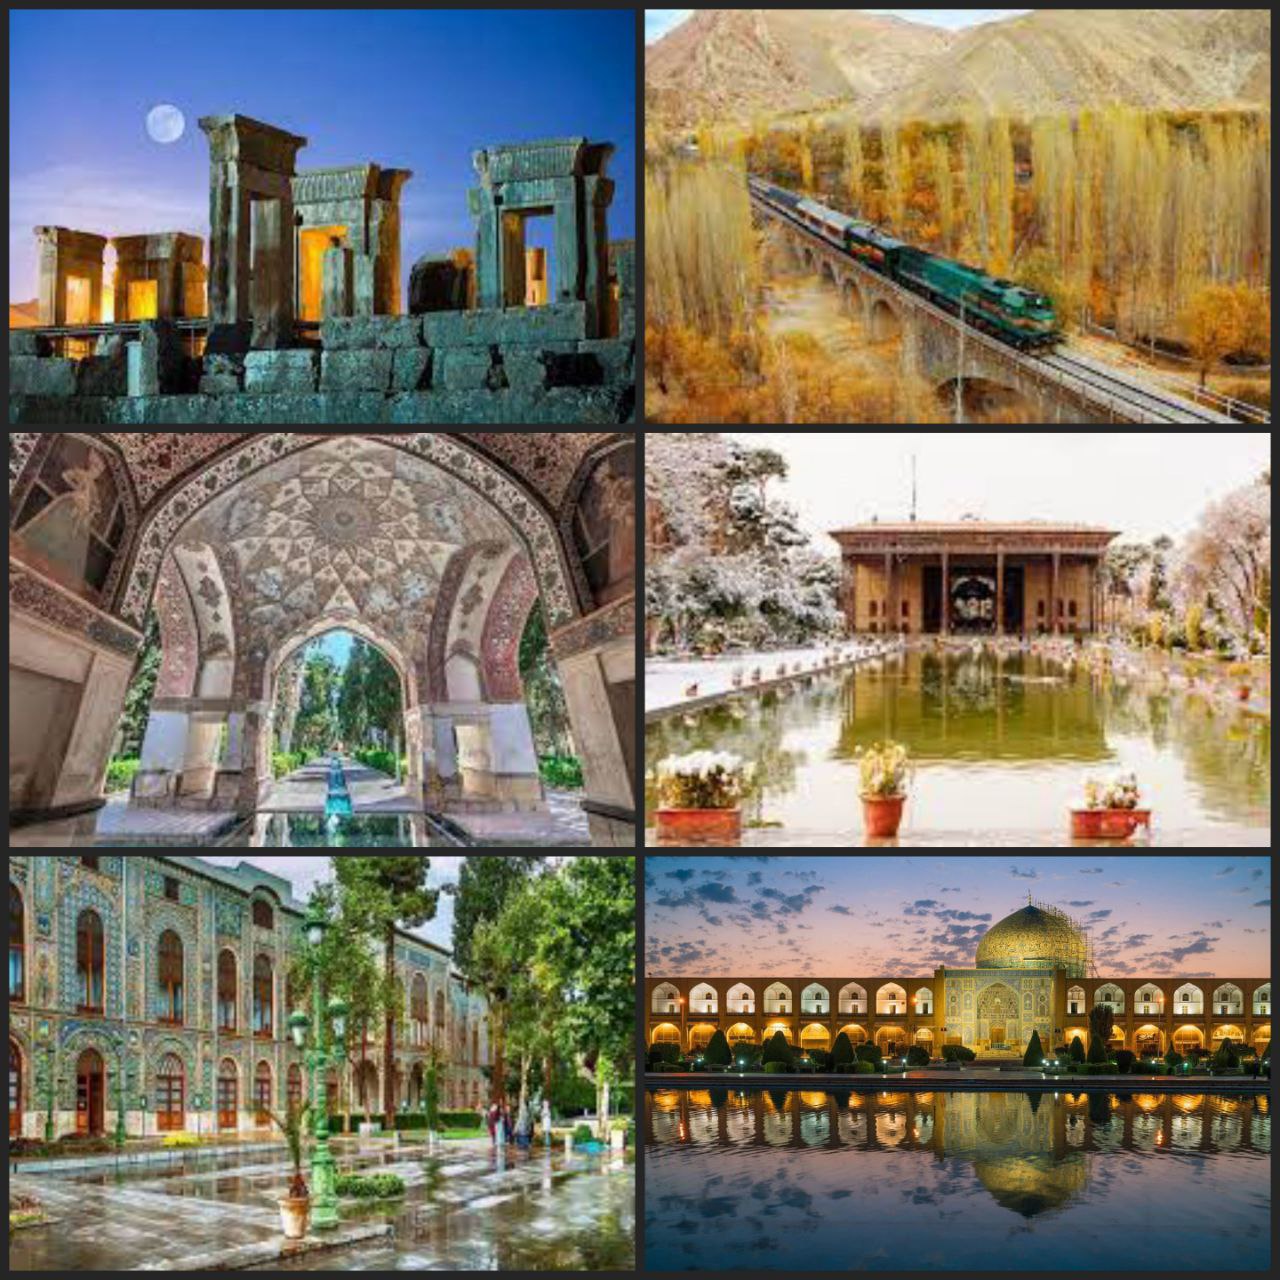 Iran's outstanding UNESCO sites